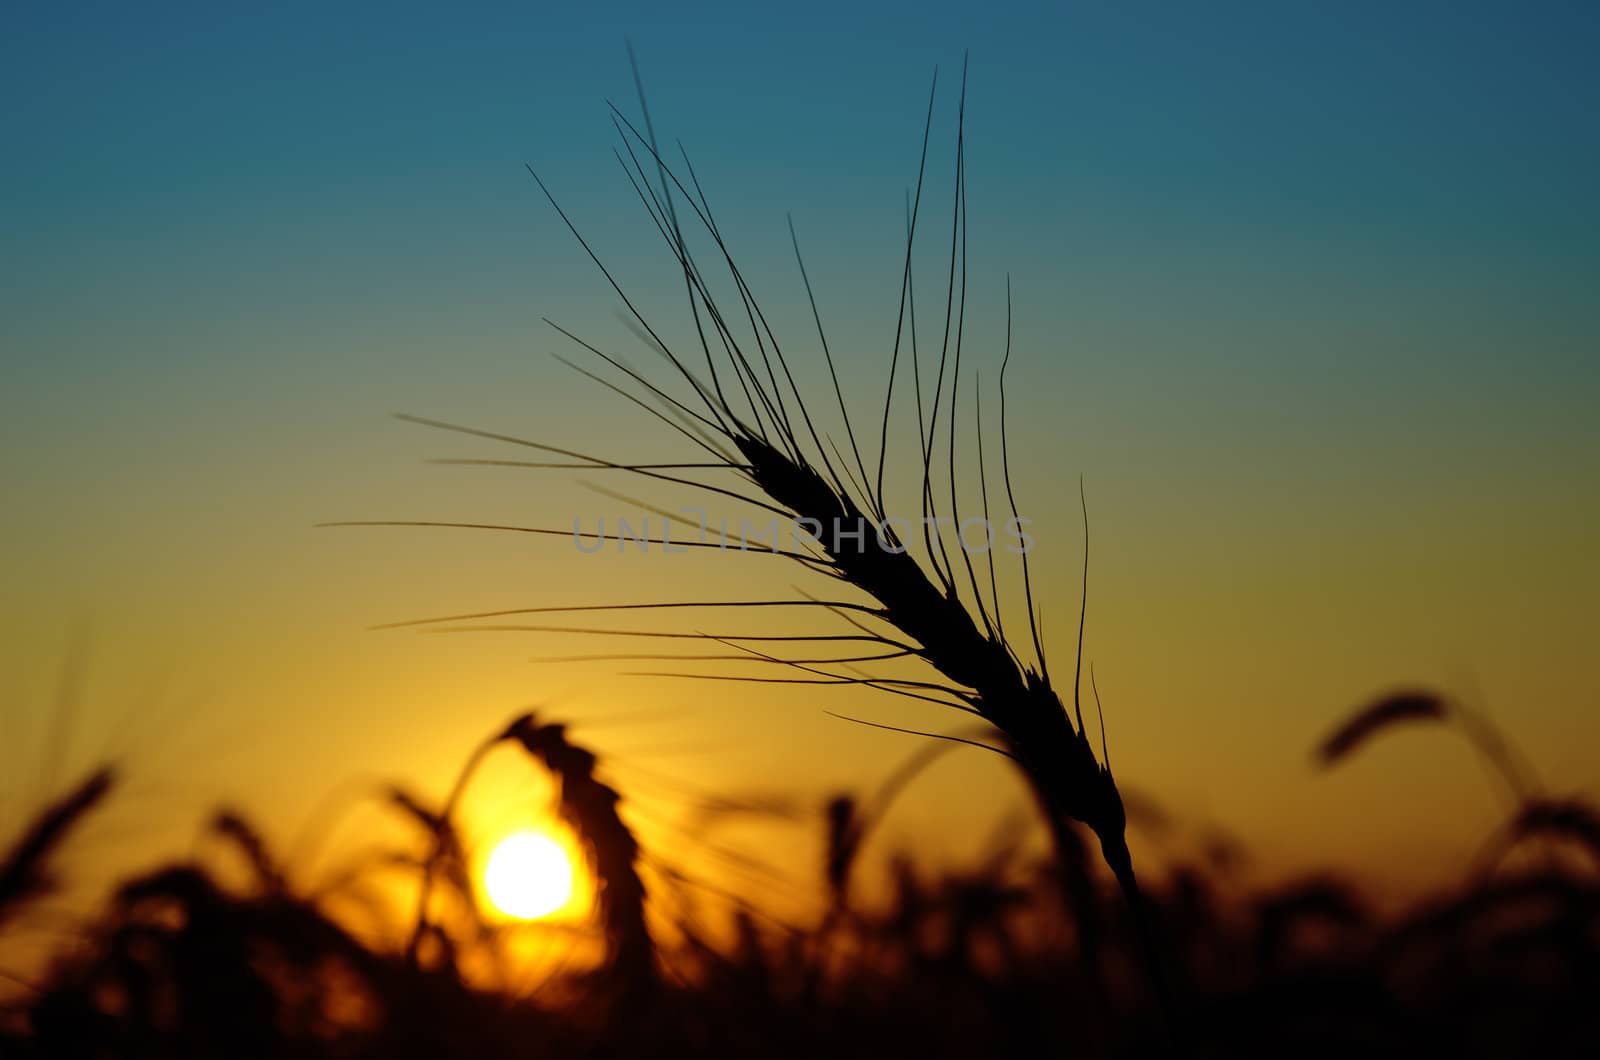 golden sunset over harvest field